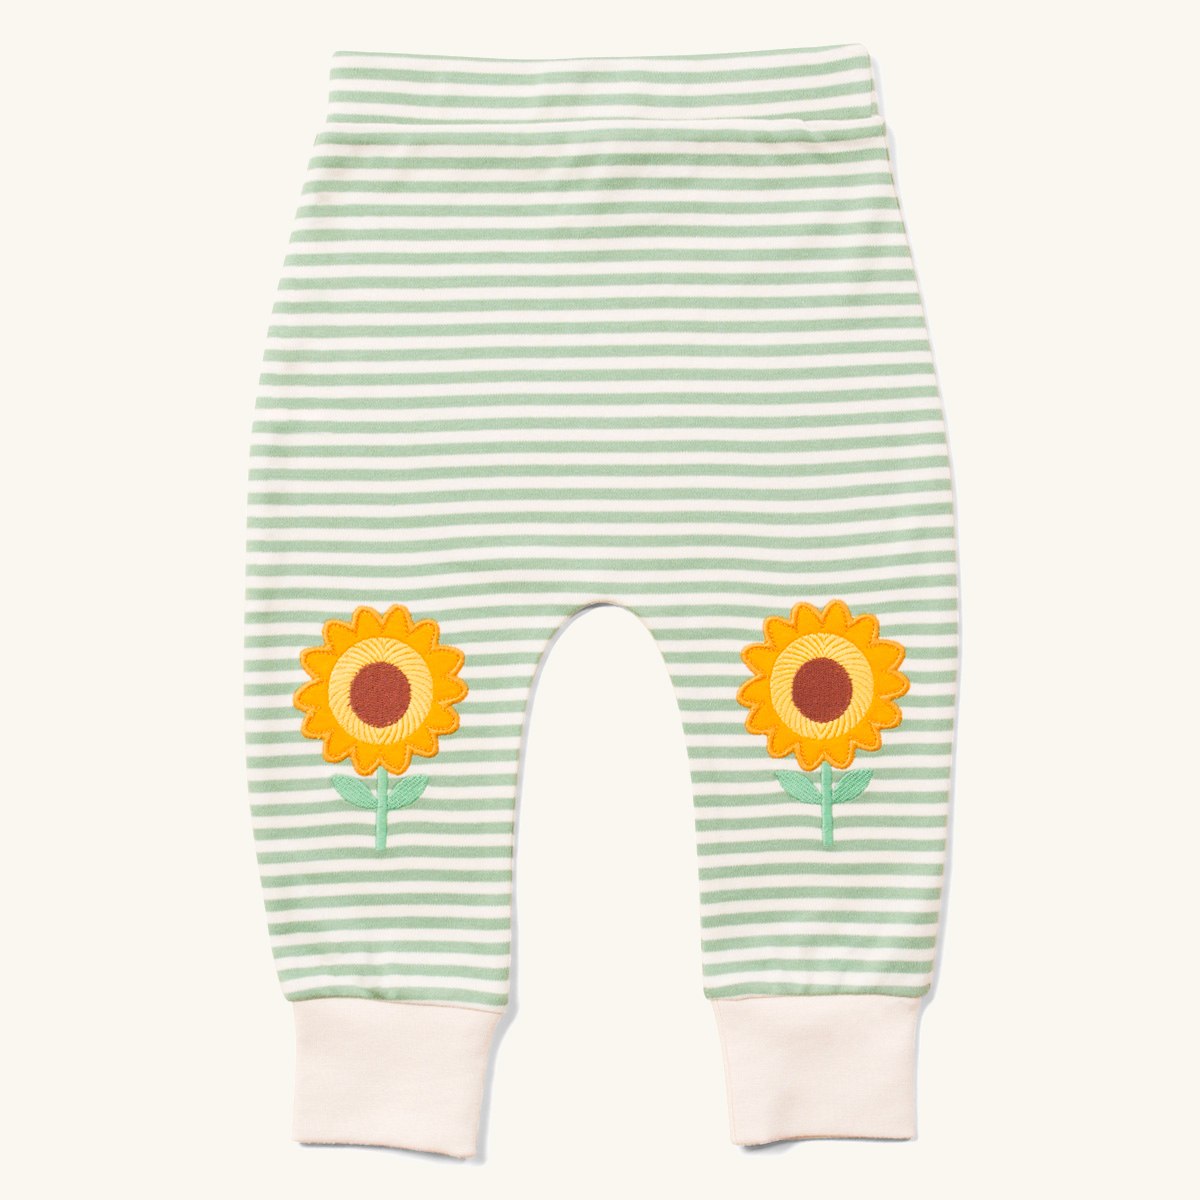 Best Deal for Sunflower Teen Girls Period Underwear Soft Cotton